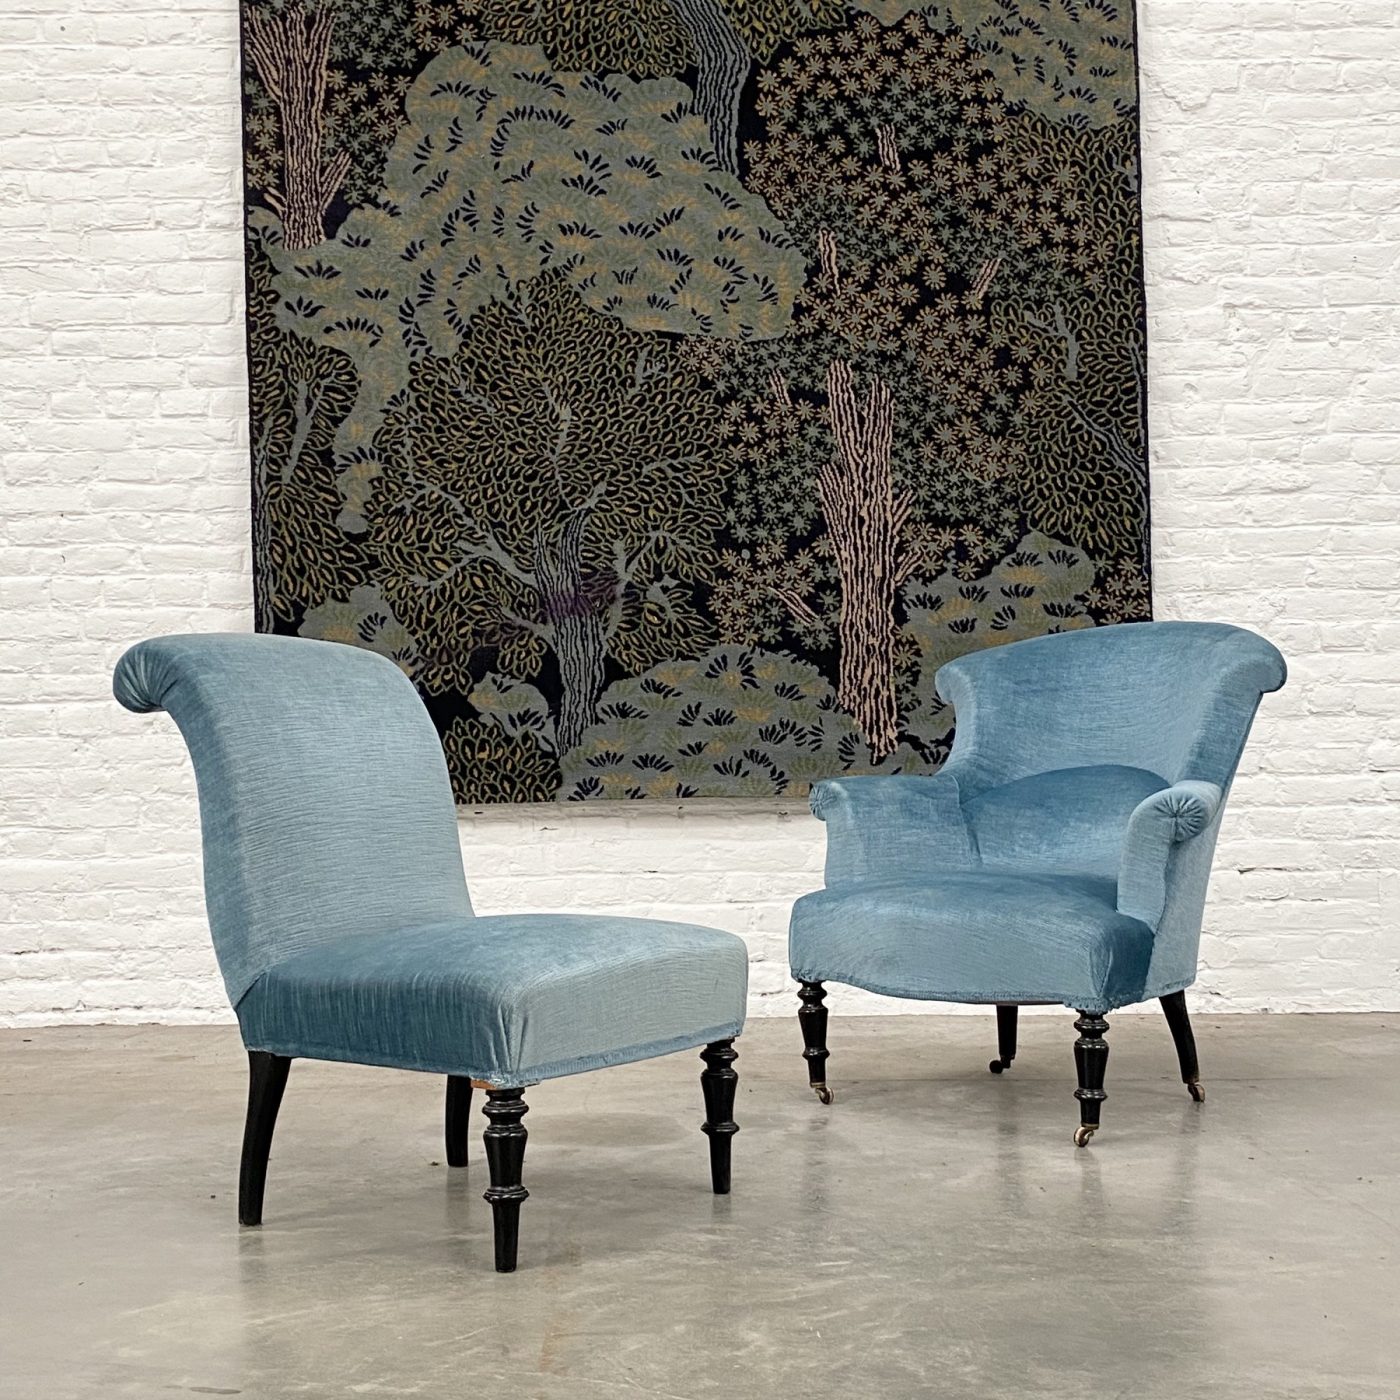 objet-vagabond-napoleon3-armchairs0006